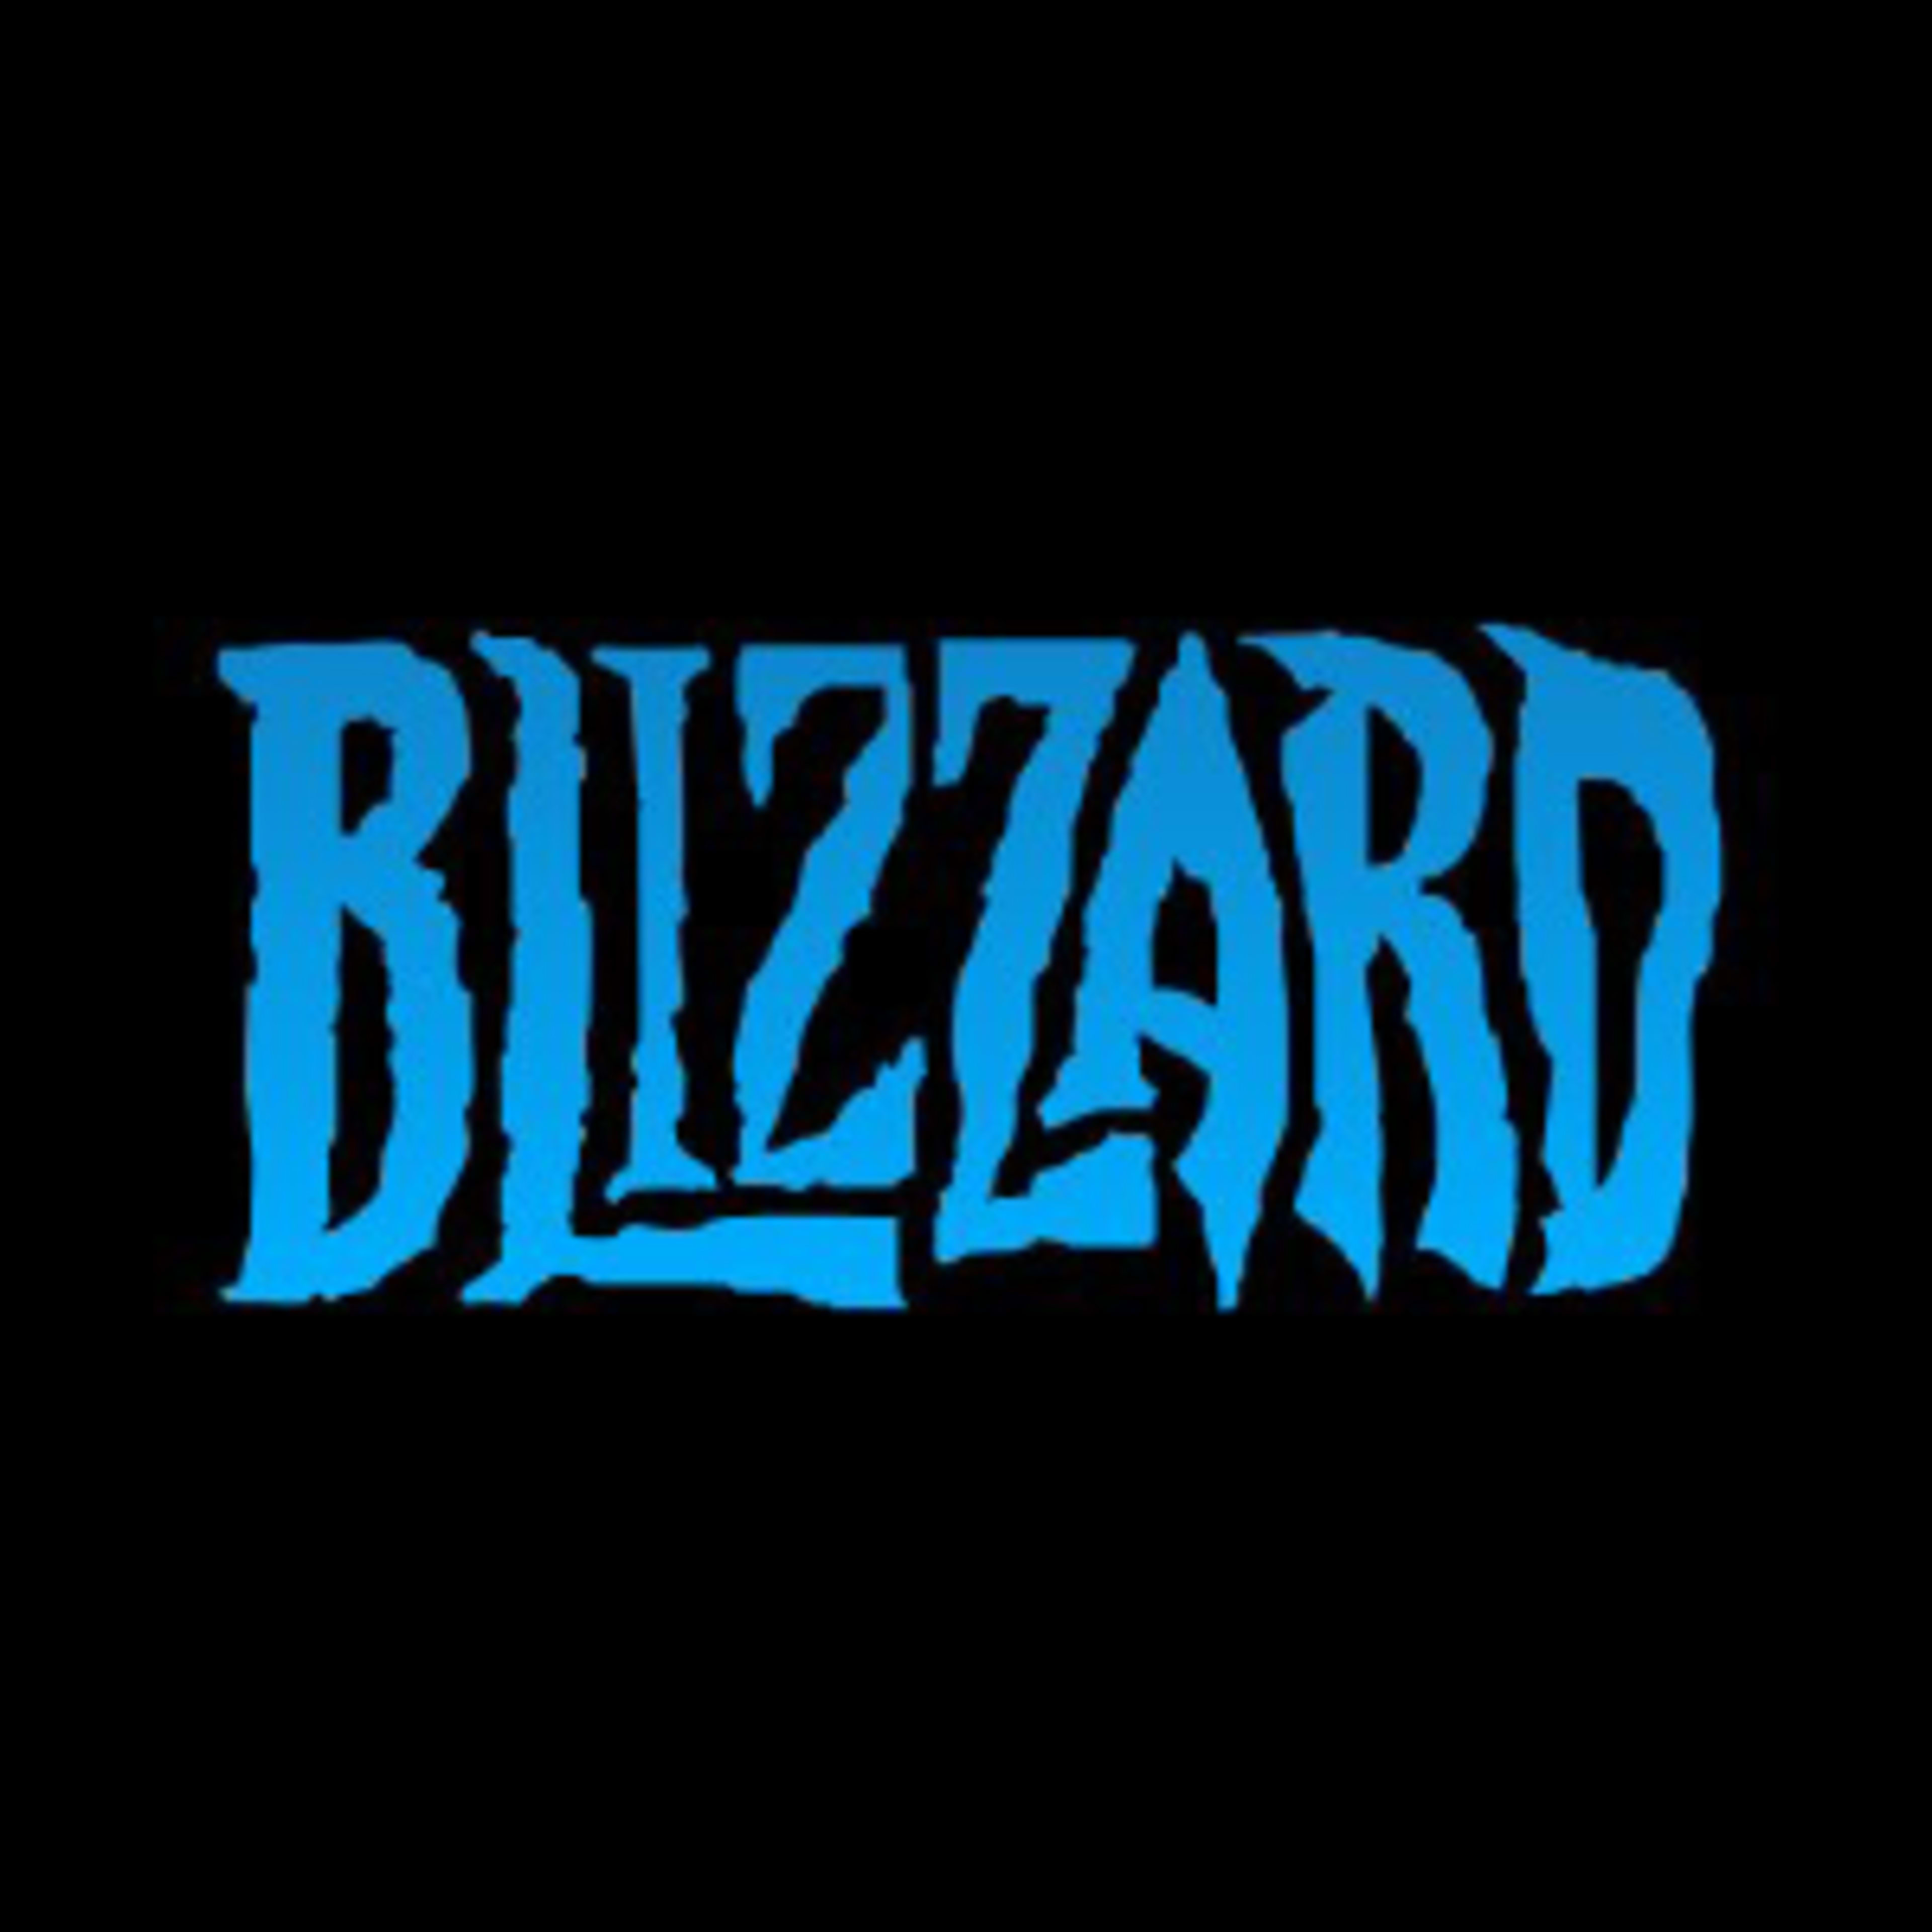 Blizzard Gear Code